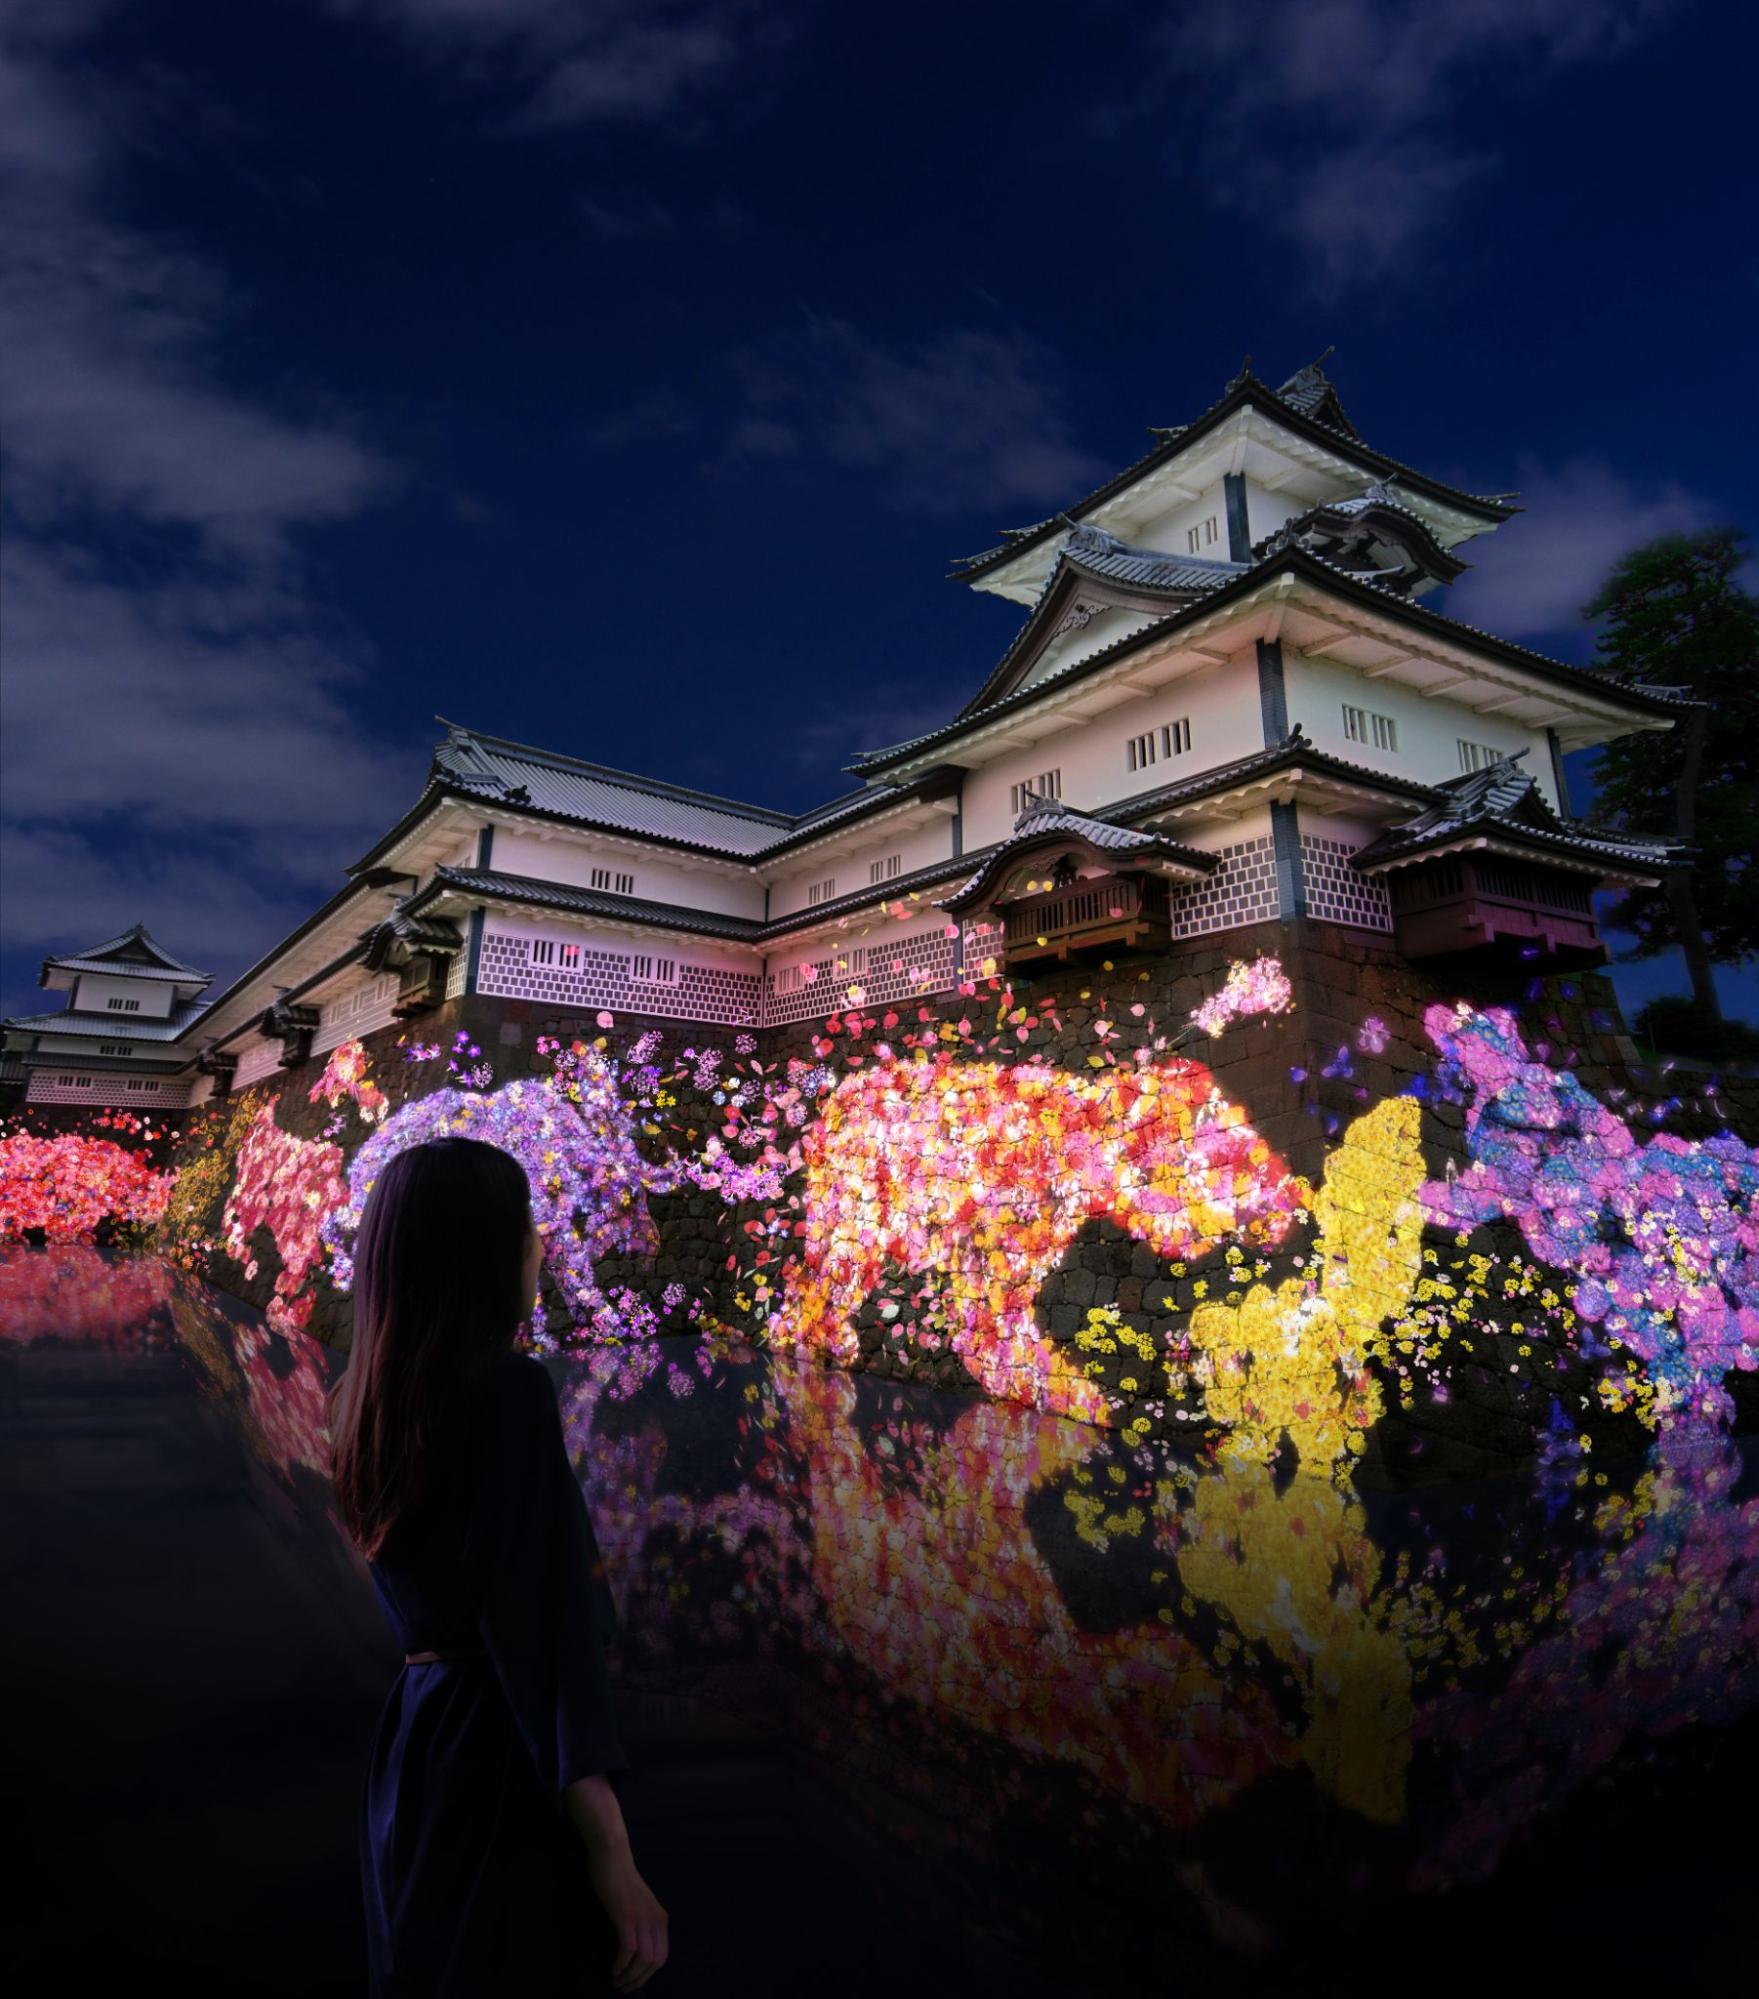 チームラボ、23年9月30日から金沢城公園「五十間長屋」の石垣」にアート投影